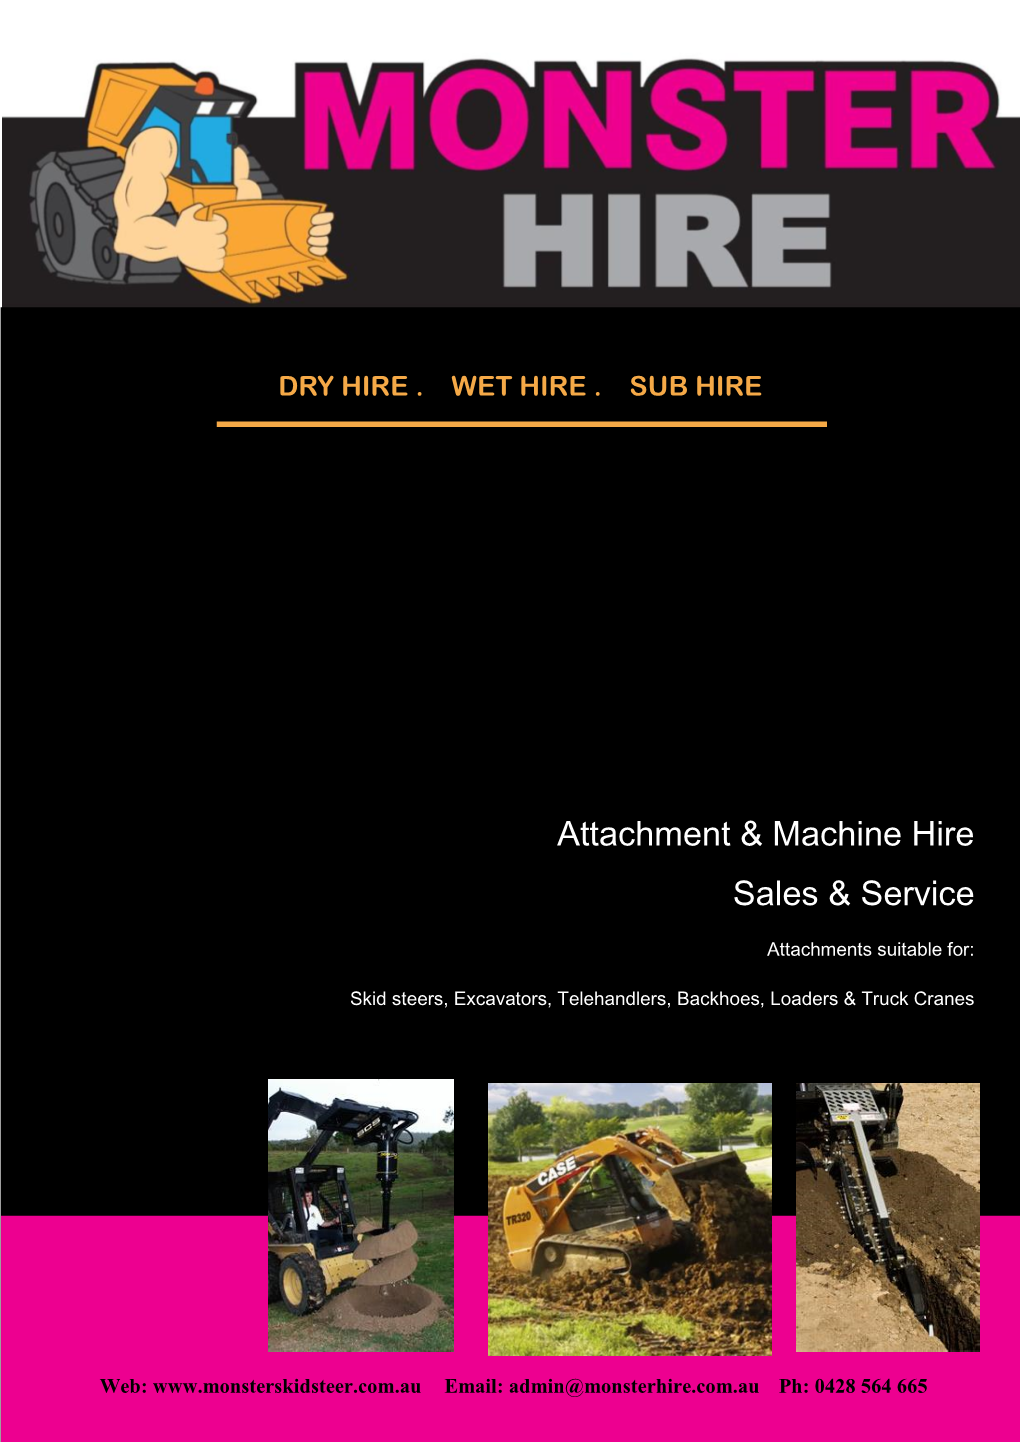 Attachment & Machine Hire Sales & Service